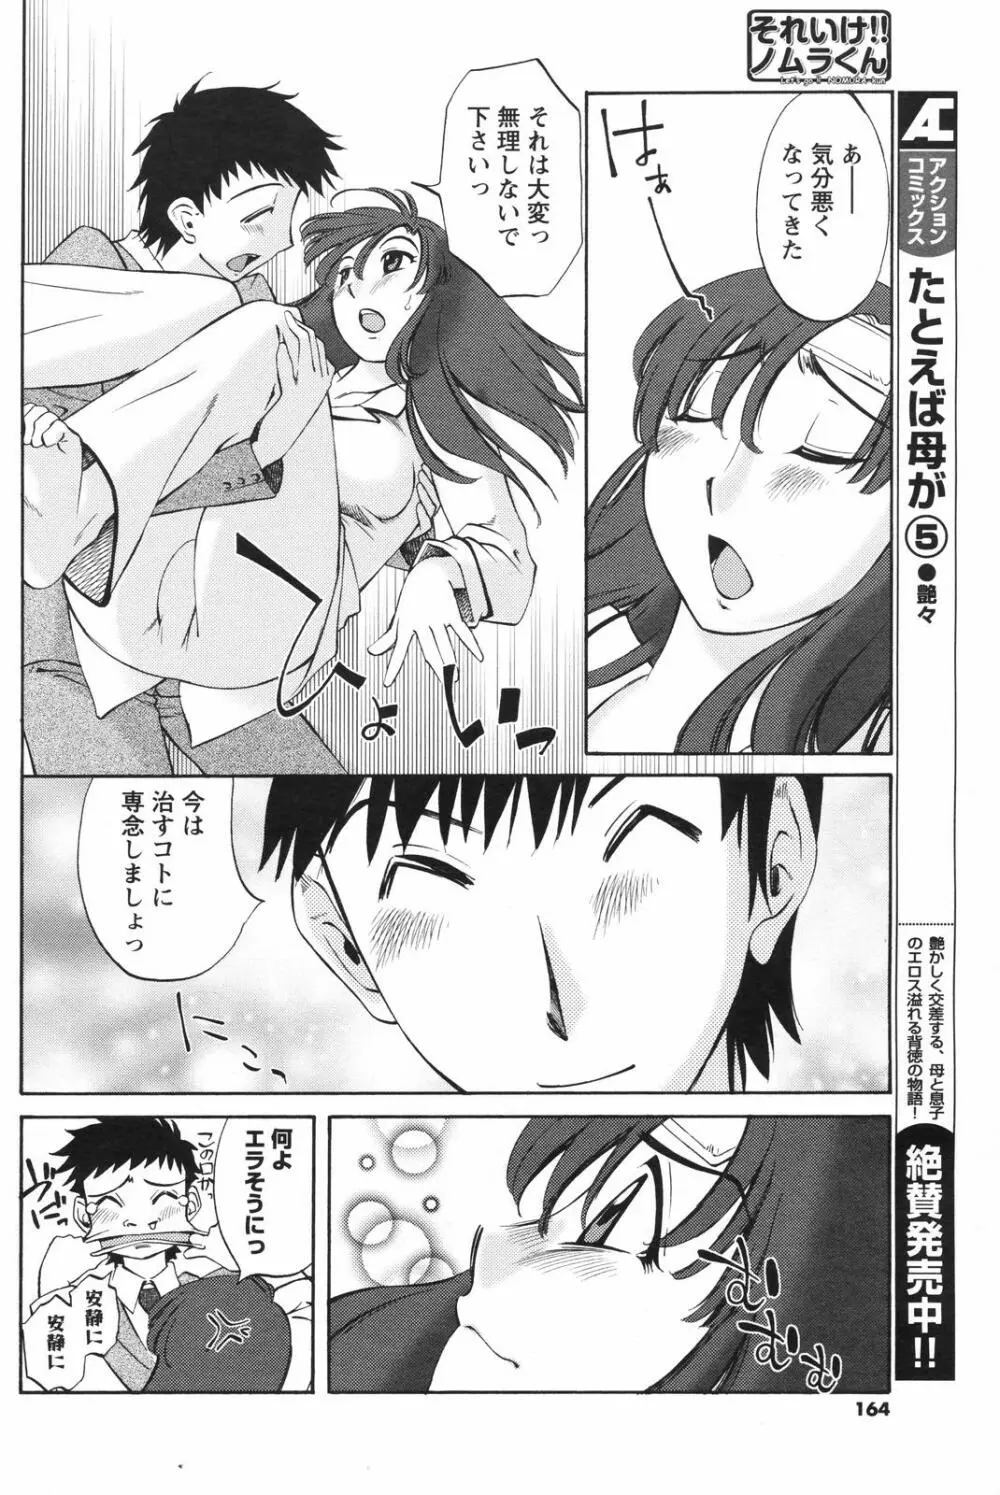 メンズヤングスペシャルIKAZUCHI雷 Vol.4 2007年12月号増刊 164ページ